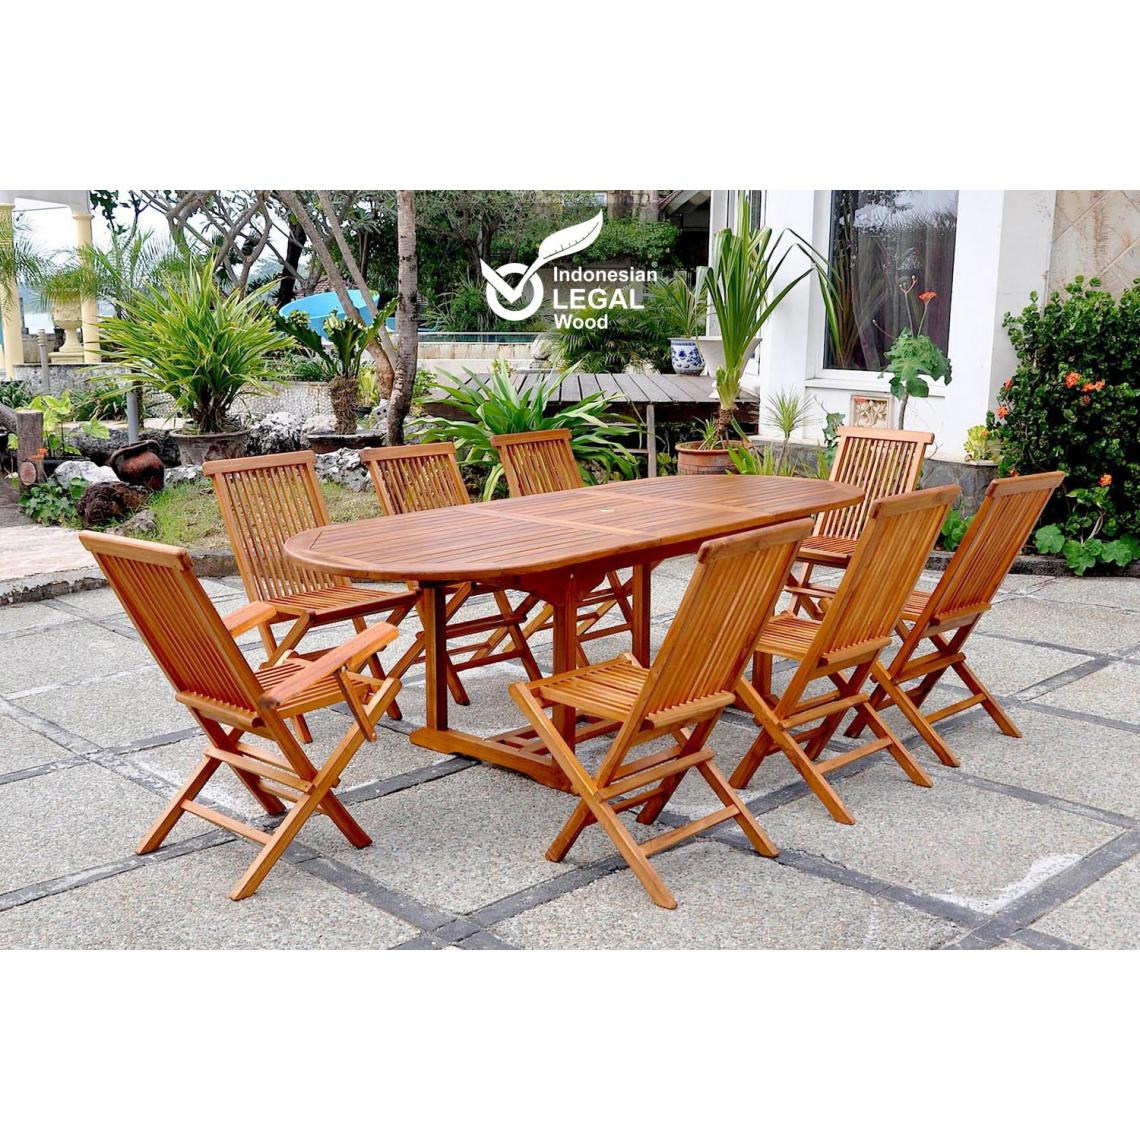 Concept Usine - Lubok : Salon de jardin Teck huilé 8 personnes - Table ovale + 6 chaises + 2 fauteuils - Ensembles tables et chaises